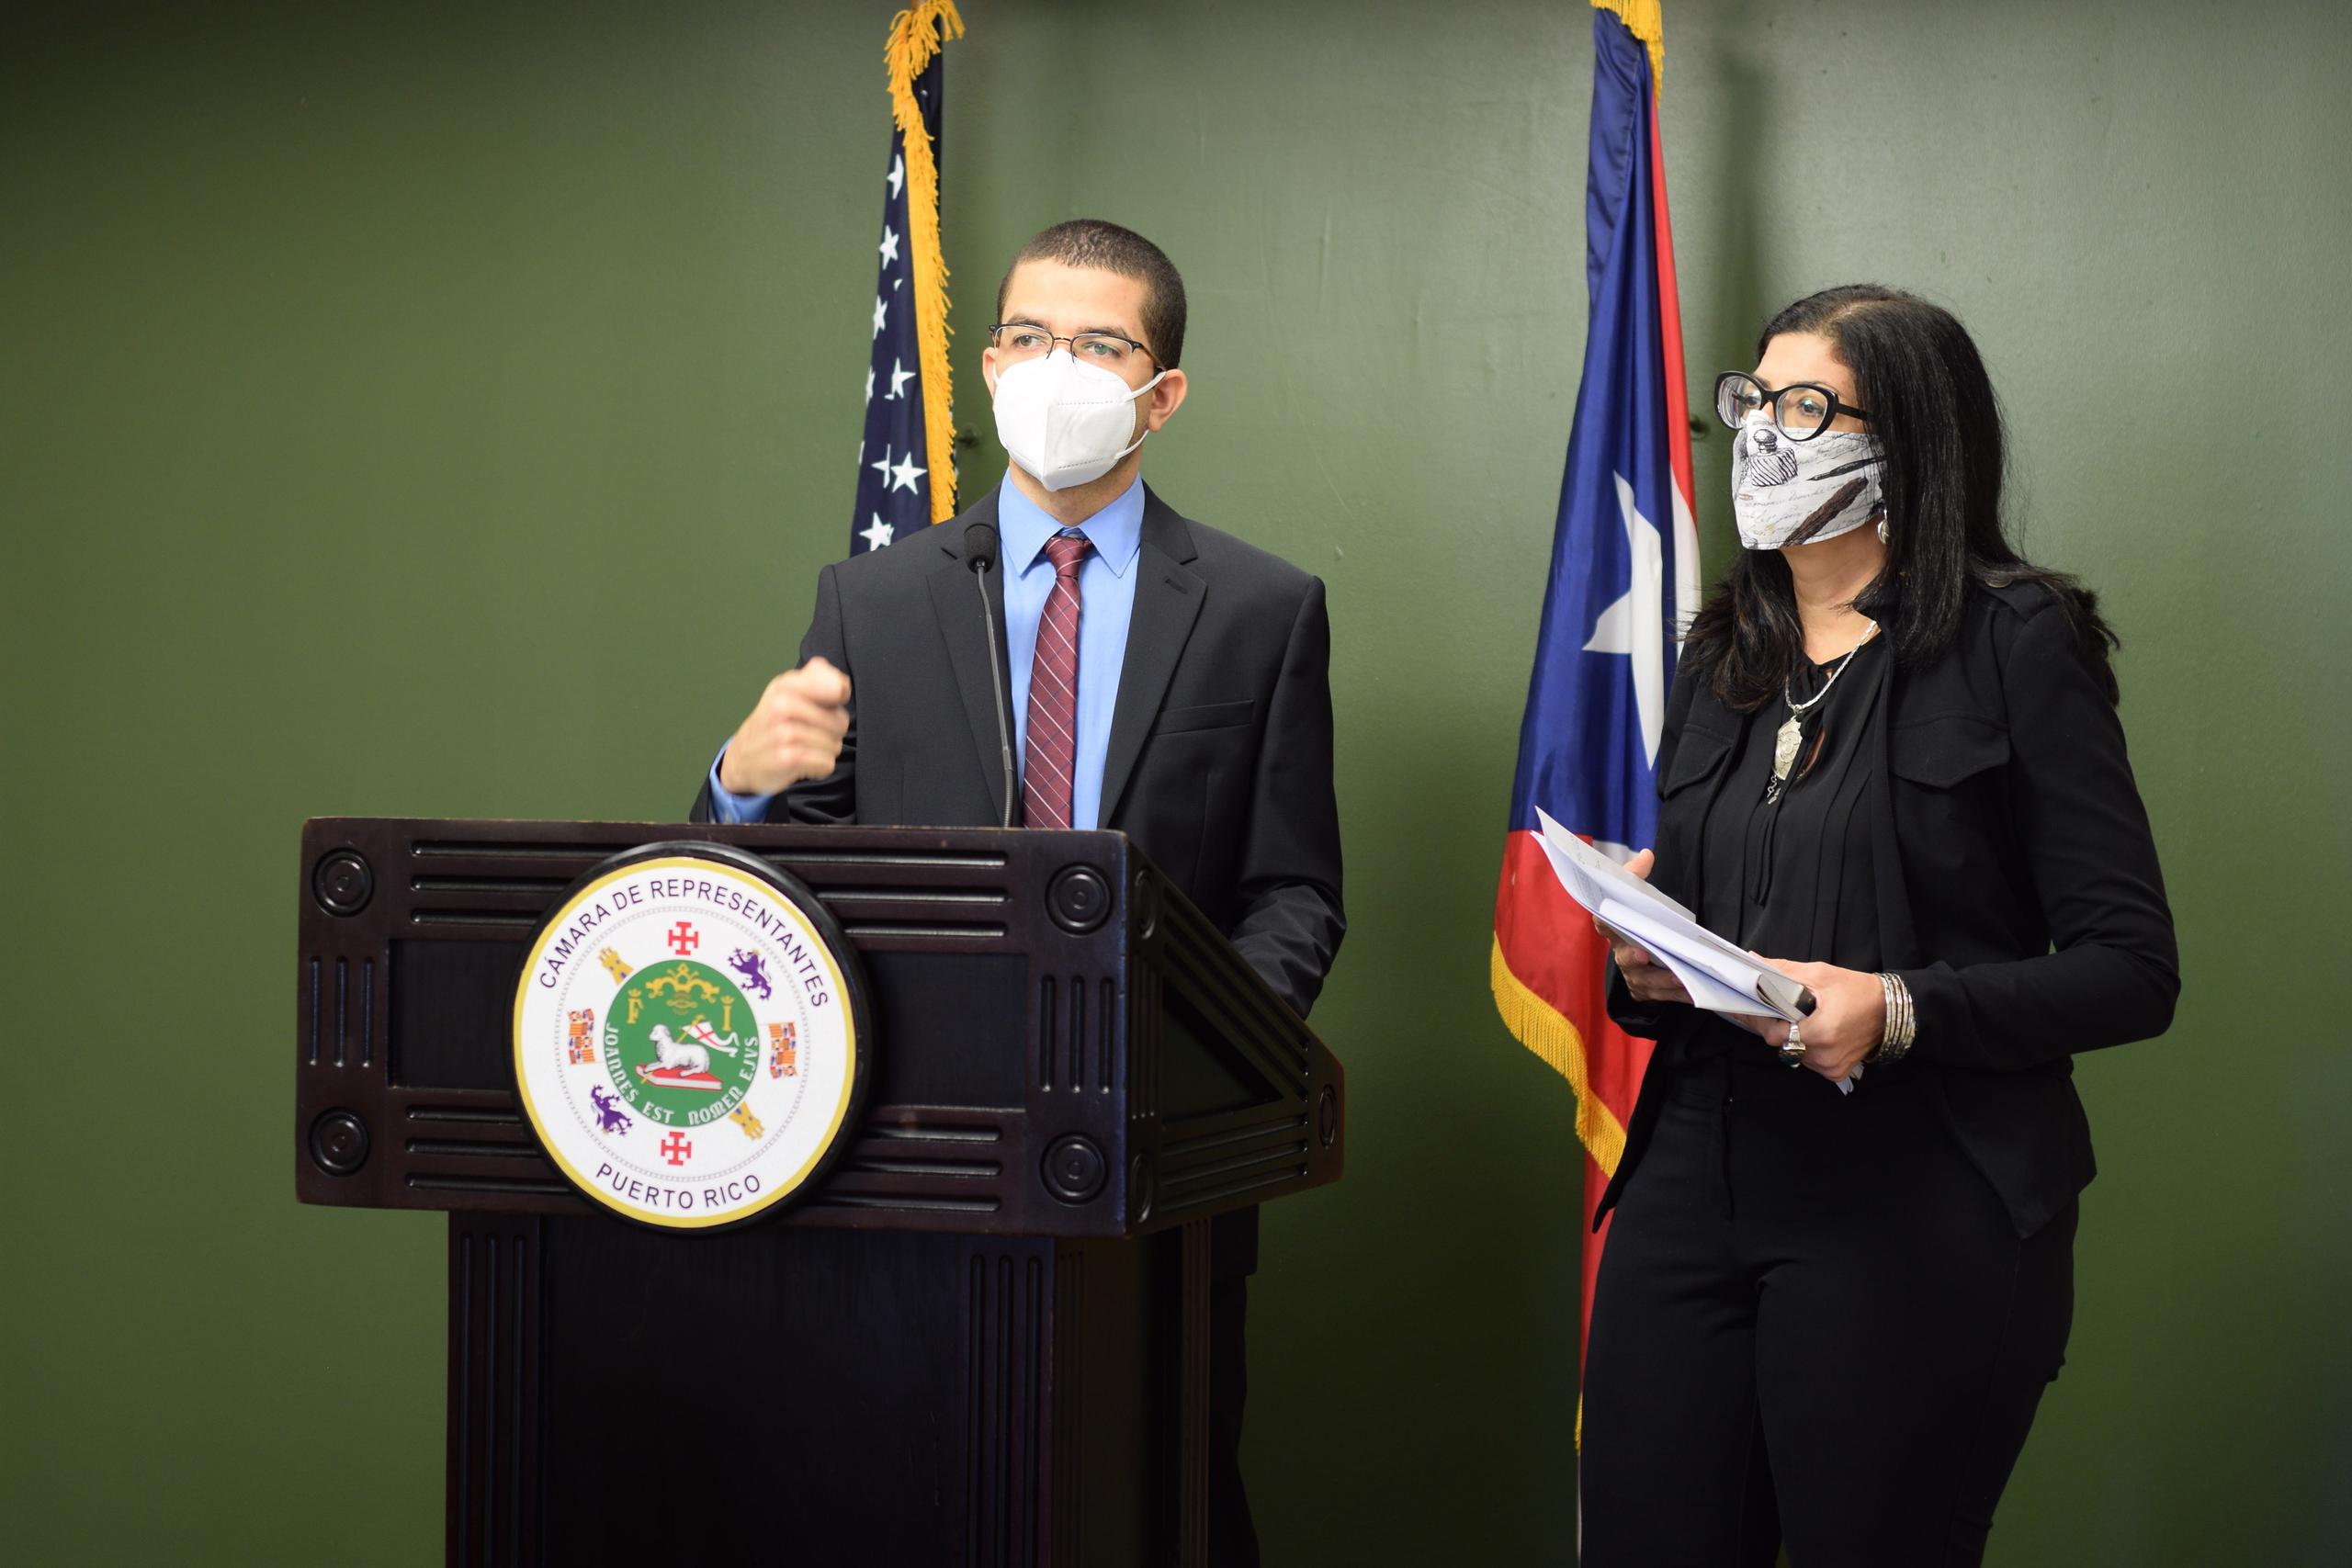 La medida legislativa recoge los reclamos de Prados en una demanda que está pendiente en el Tribunal de Primera Instancia de San Juan.